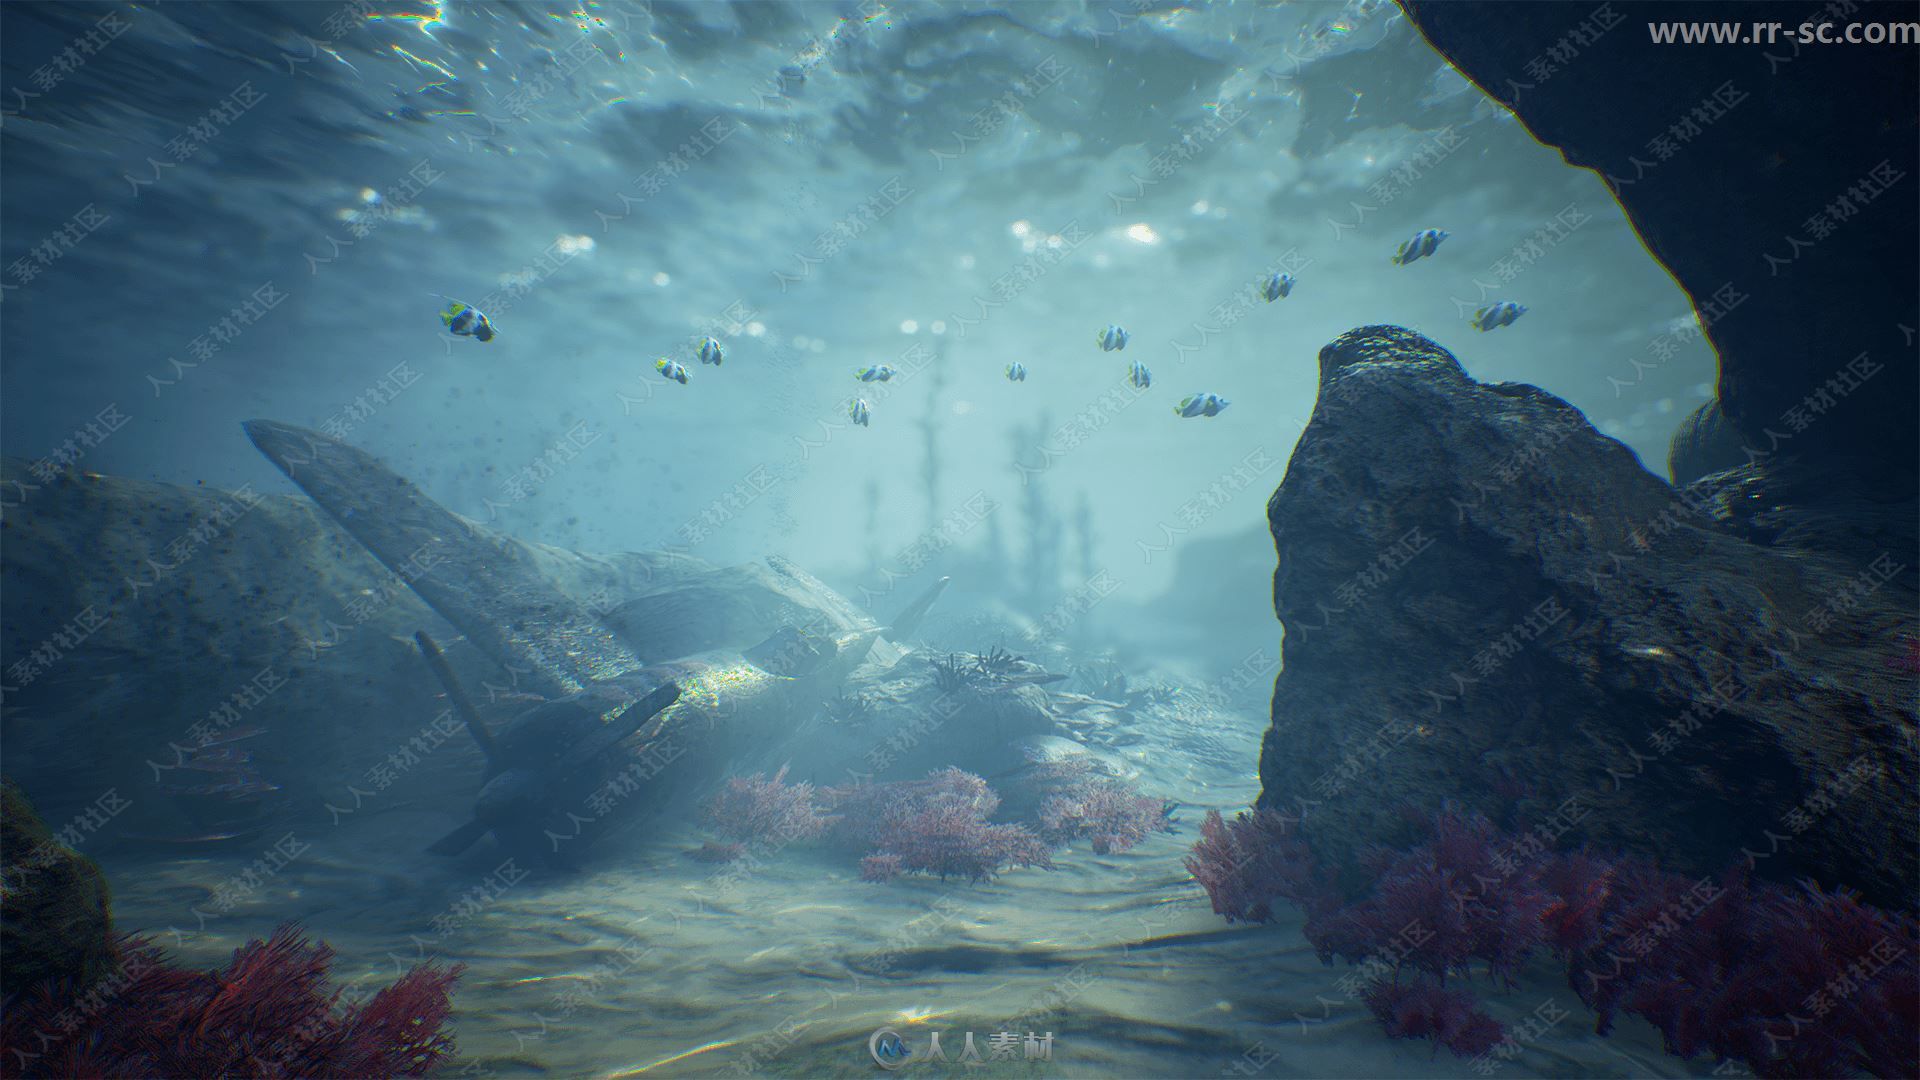 海底岩石植物动物环境渲染UE4游戏素材资源